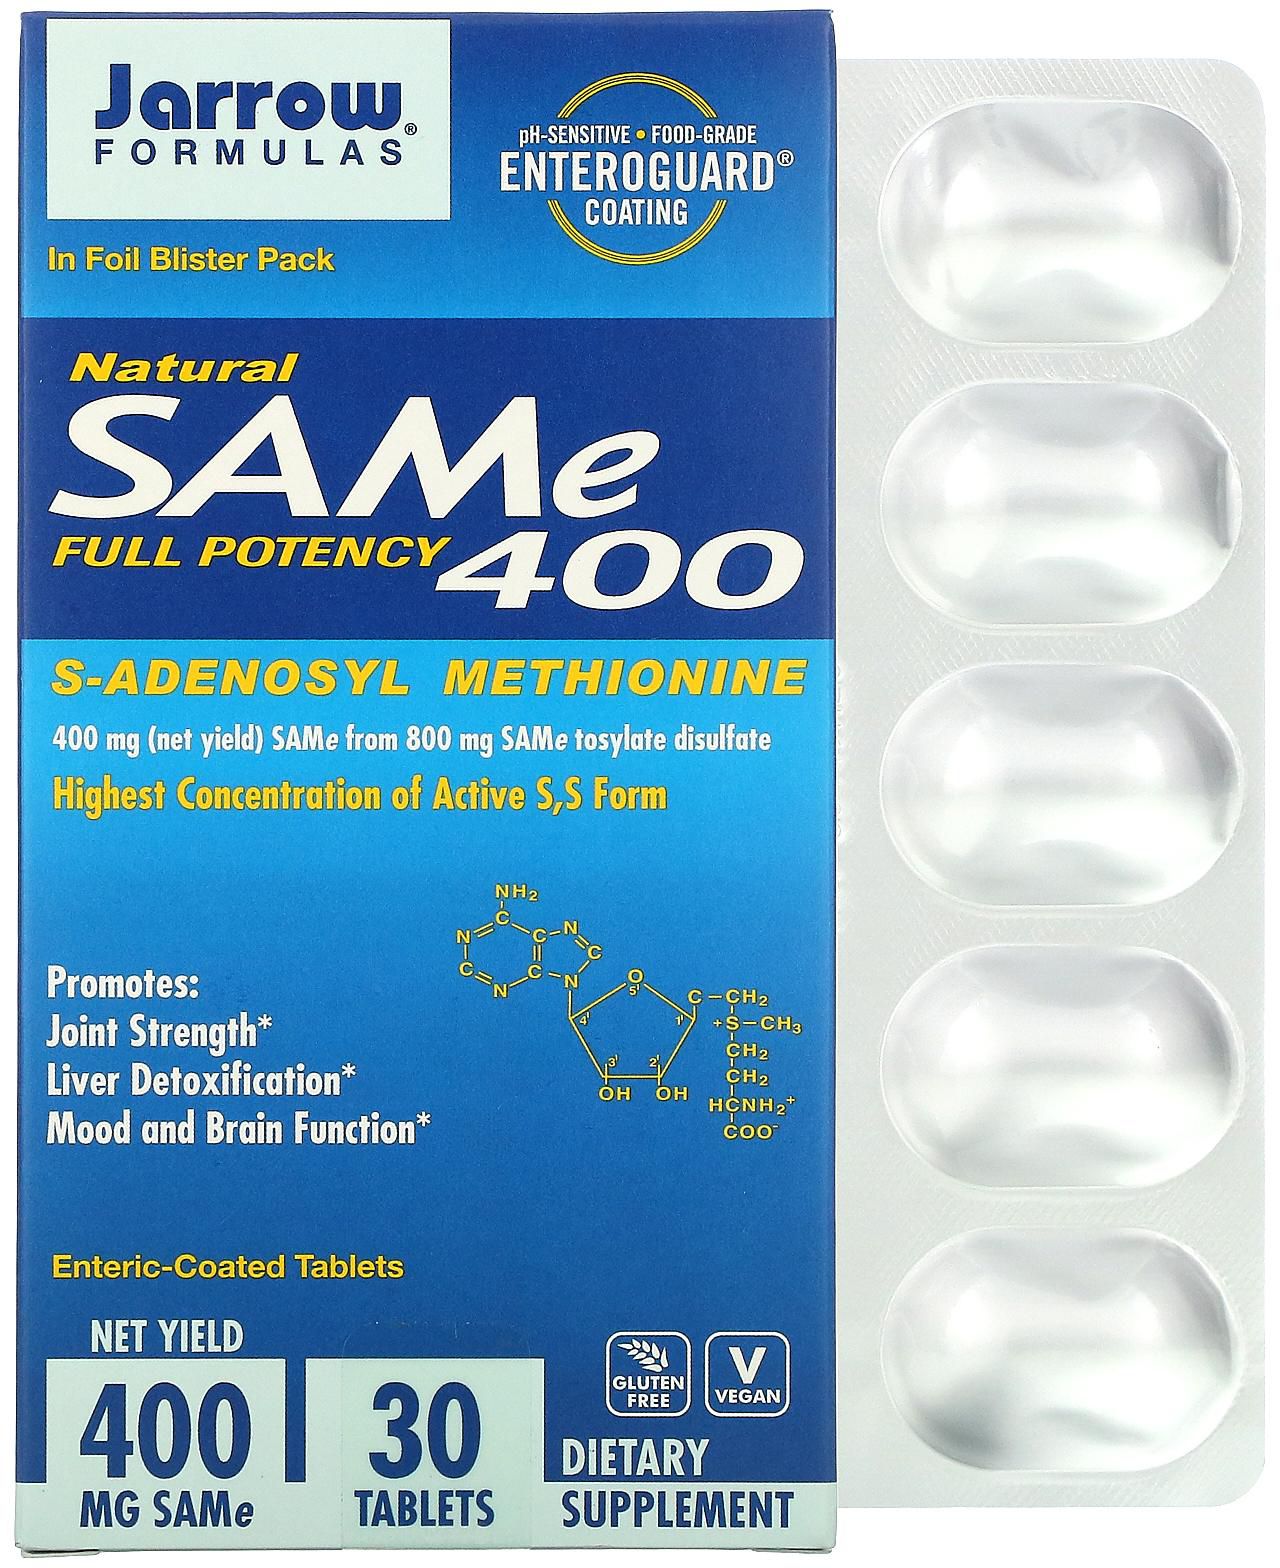 جارو فورميلاز‏, س-أدينوسيل-ل-ميثيونين طبيعي (SAM-e) 400، 400 ملجم، 30 قرصًا معويًا مغلفًا